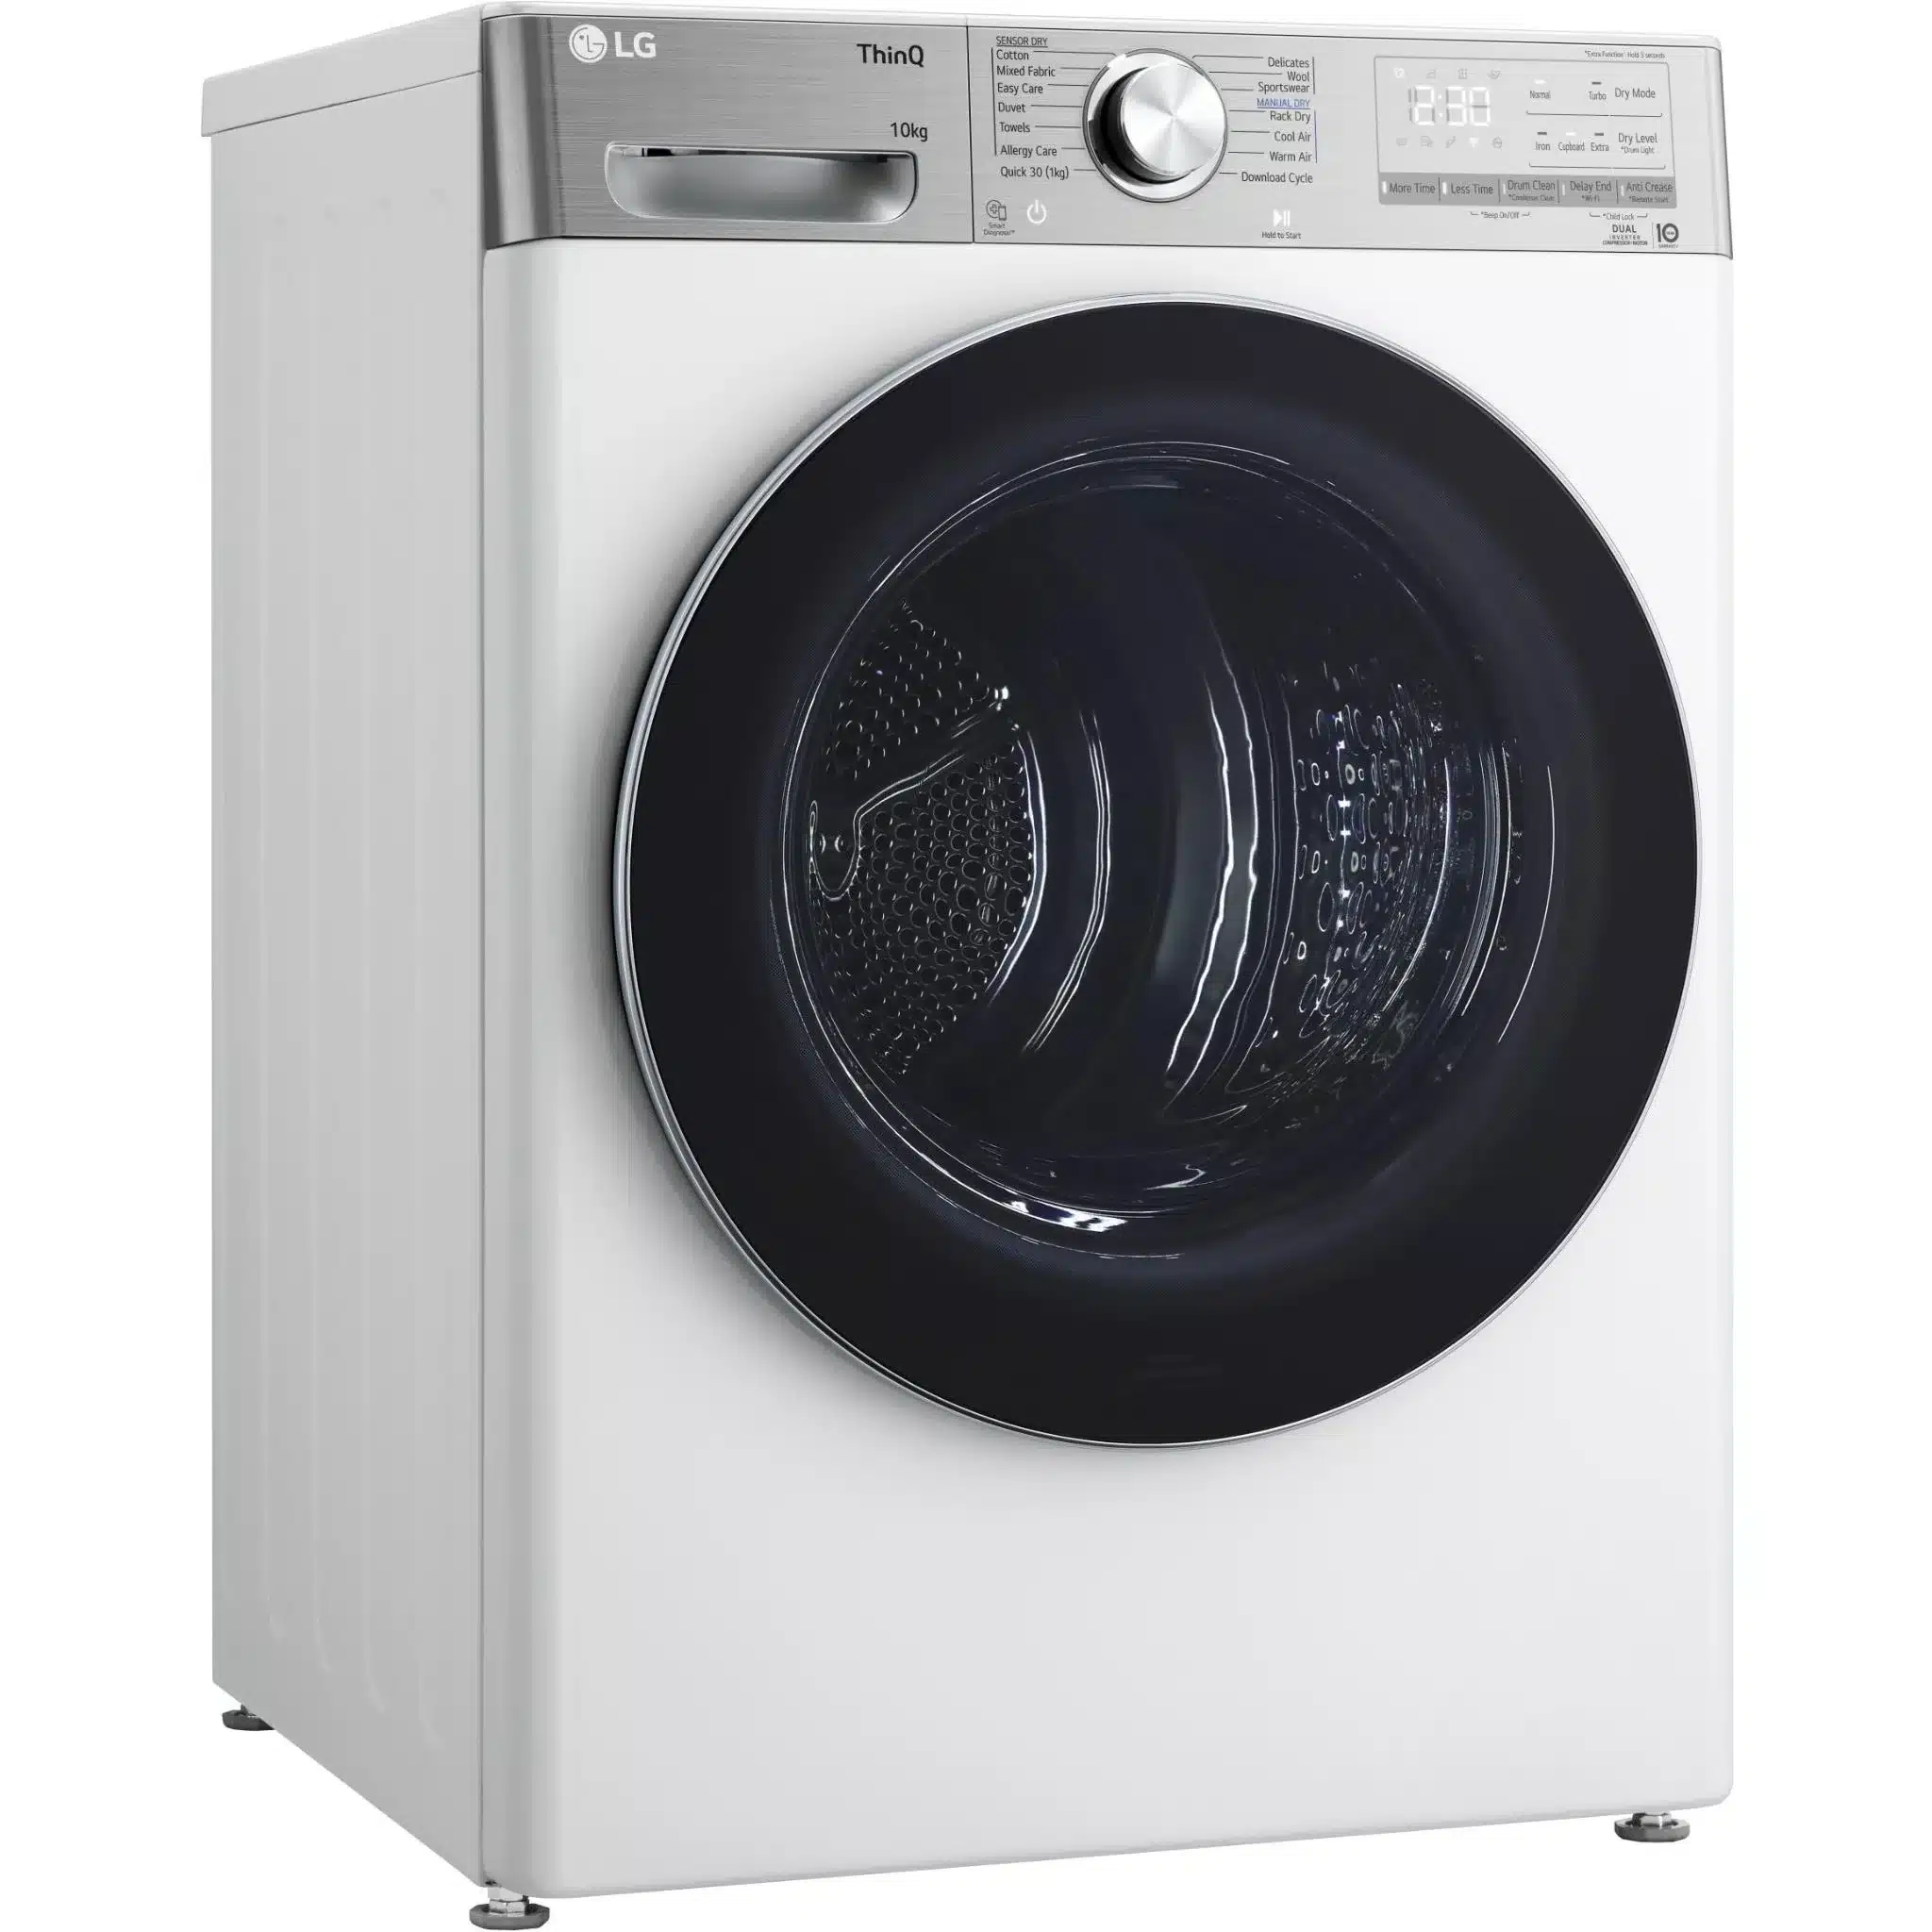 LG 10kg Series 10 Heat Pump Dryer (White) DVH10-10W